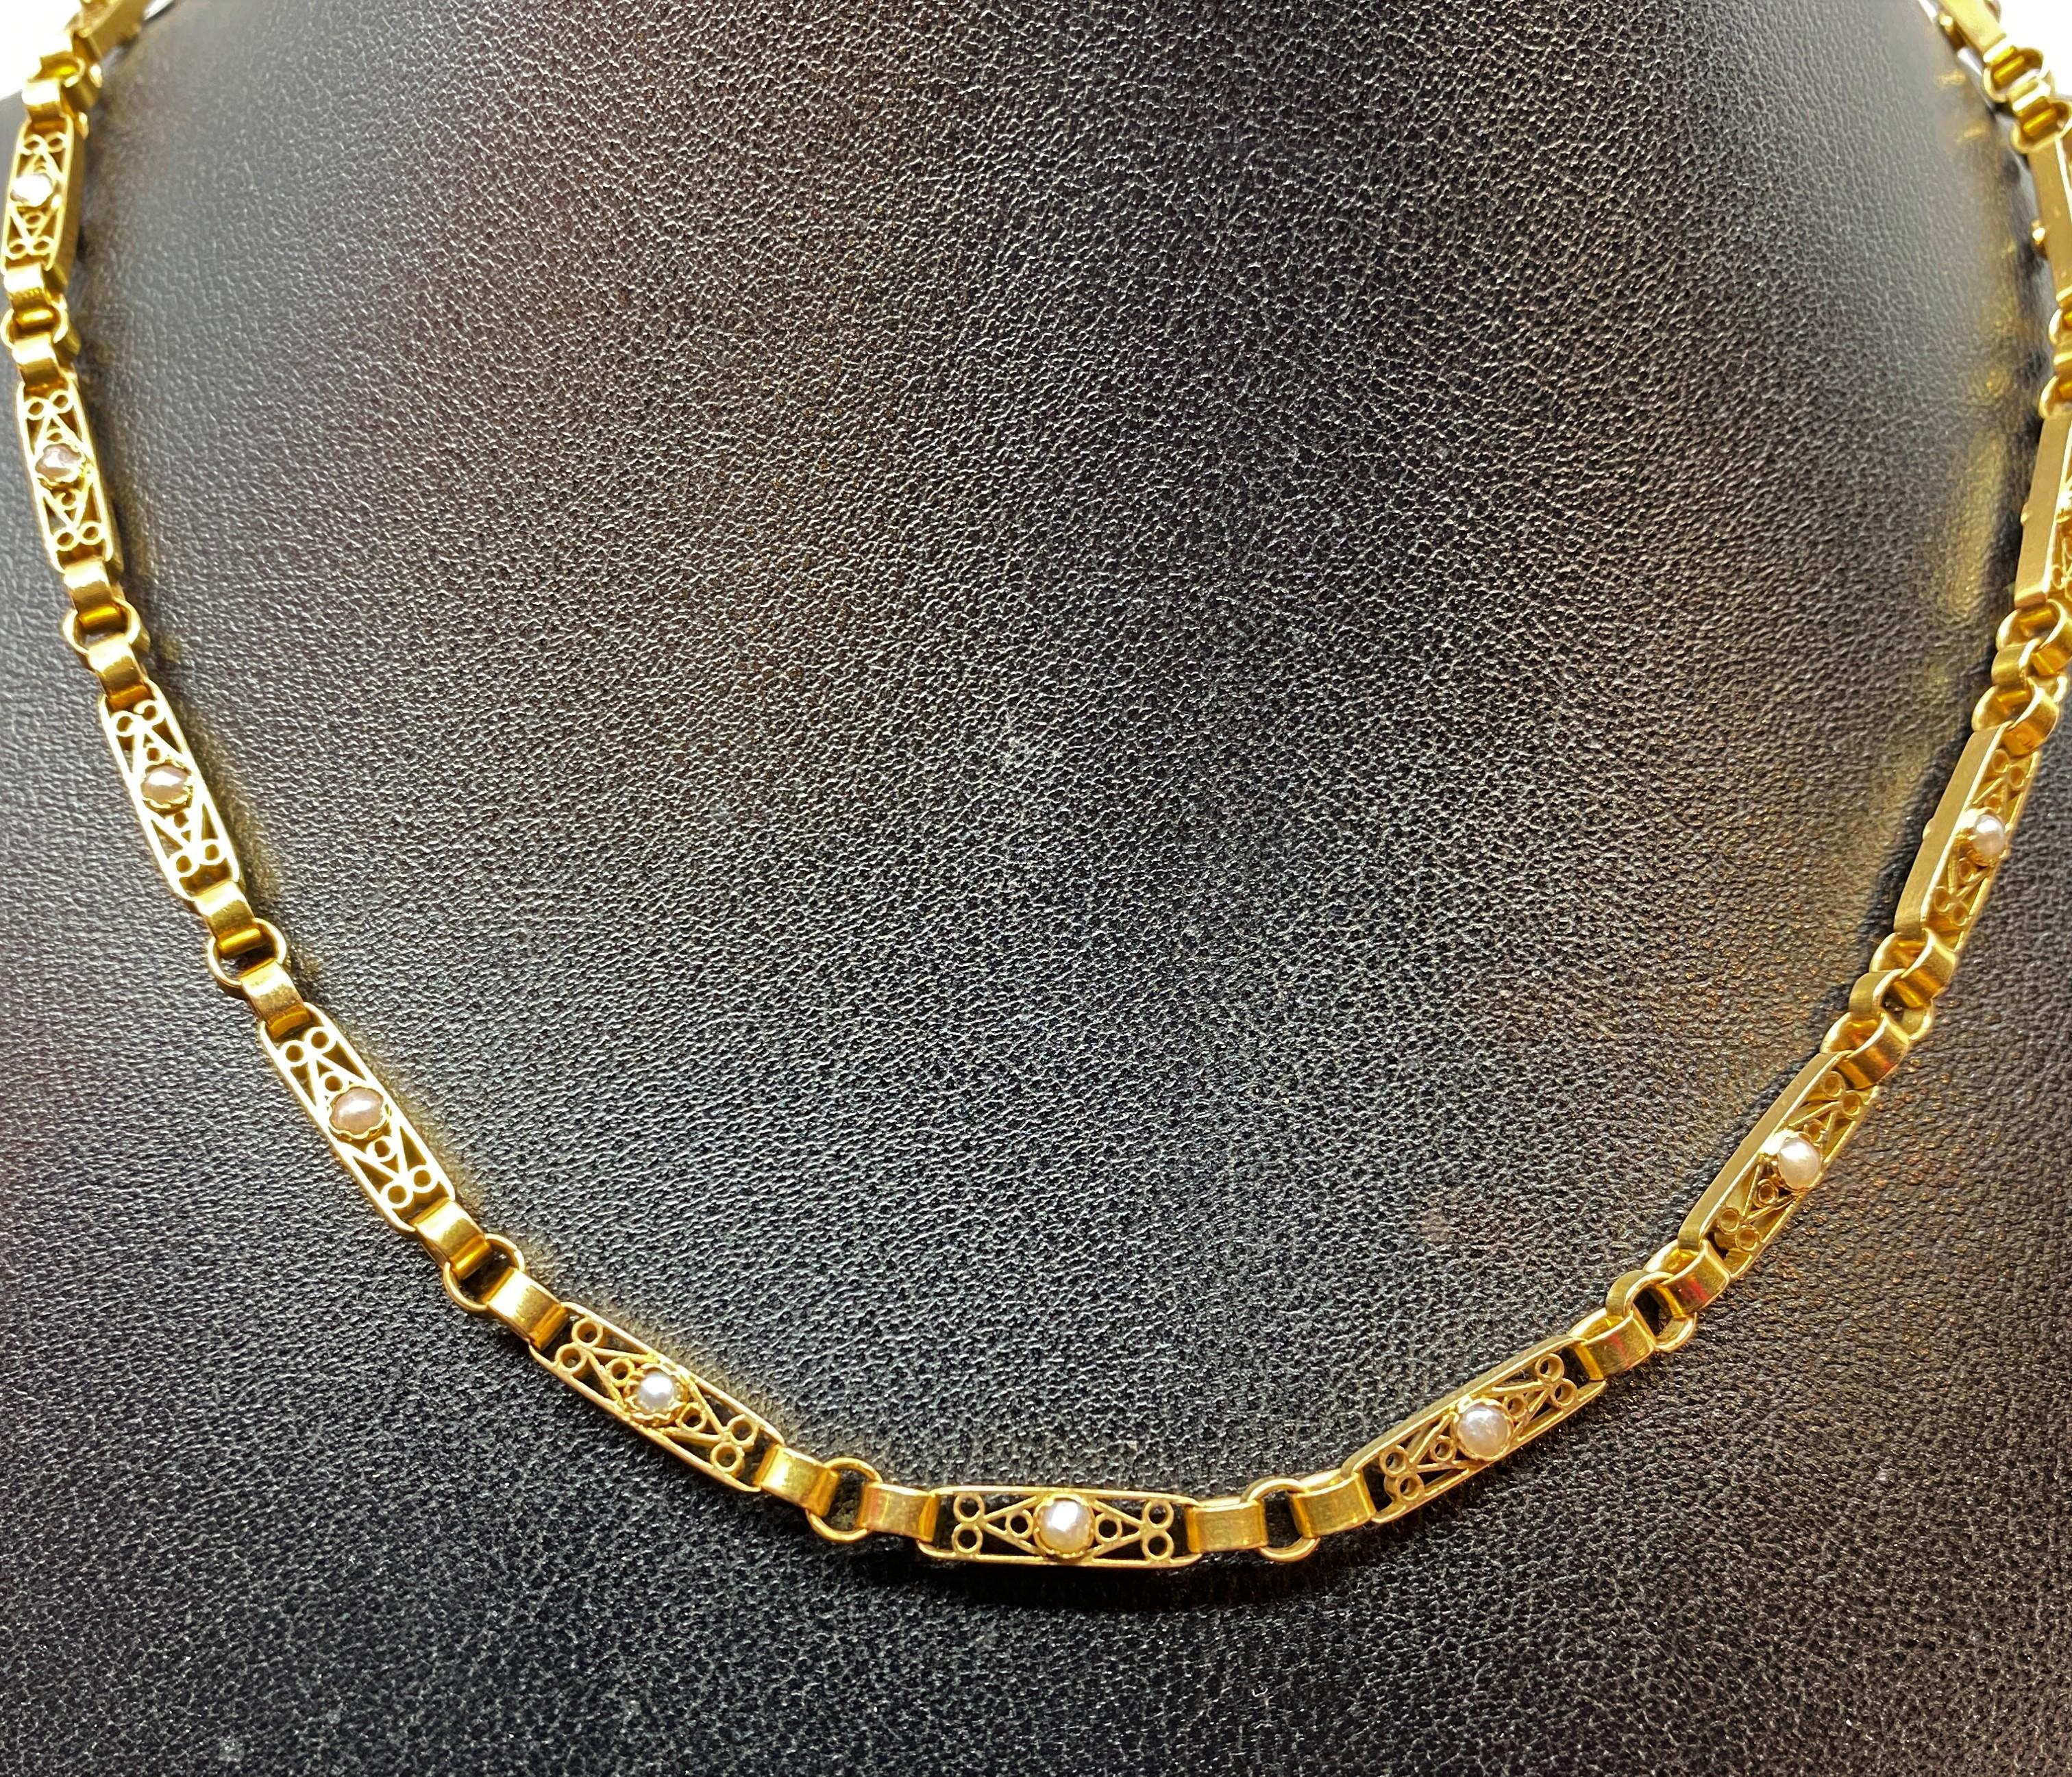 Charmant collier en or 18 carats formé de 16 maillons rectangulaires double face, sertis d’une demi perle fine dans un décor ajouré de filigranes. Ils sont reliés entre eux par trois anneaux ronds retenus jusqu’au fermoir par des mailles forçat. Le